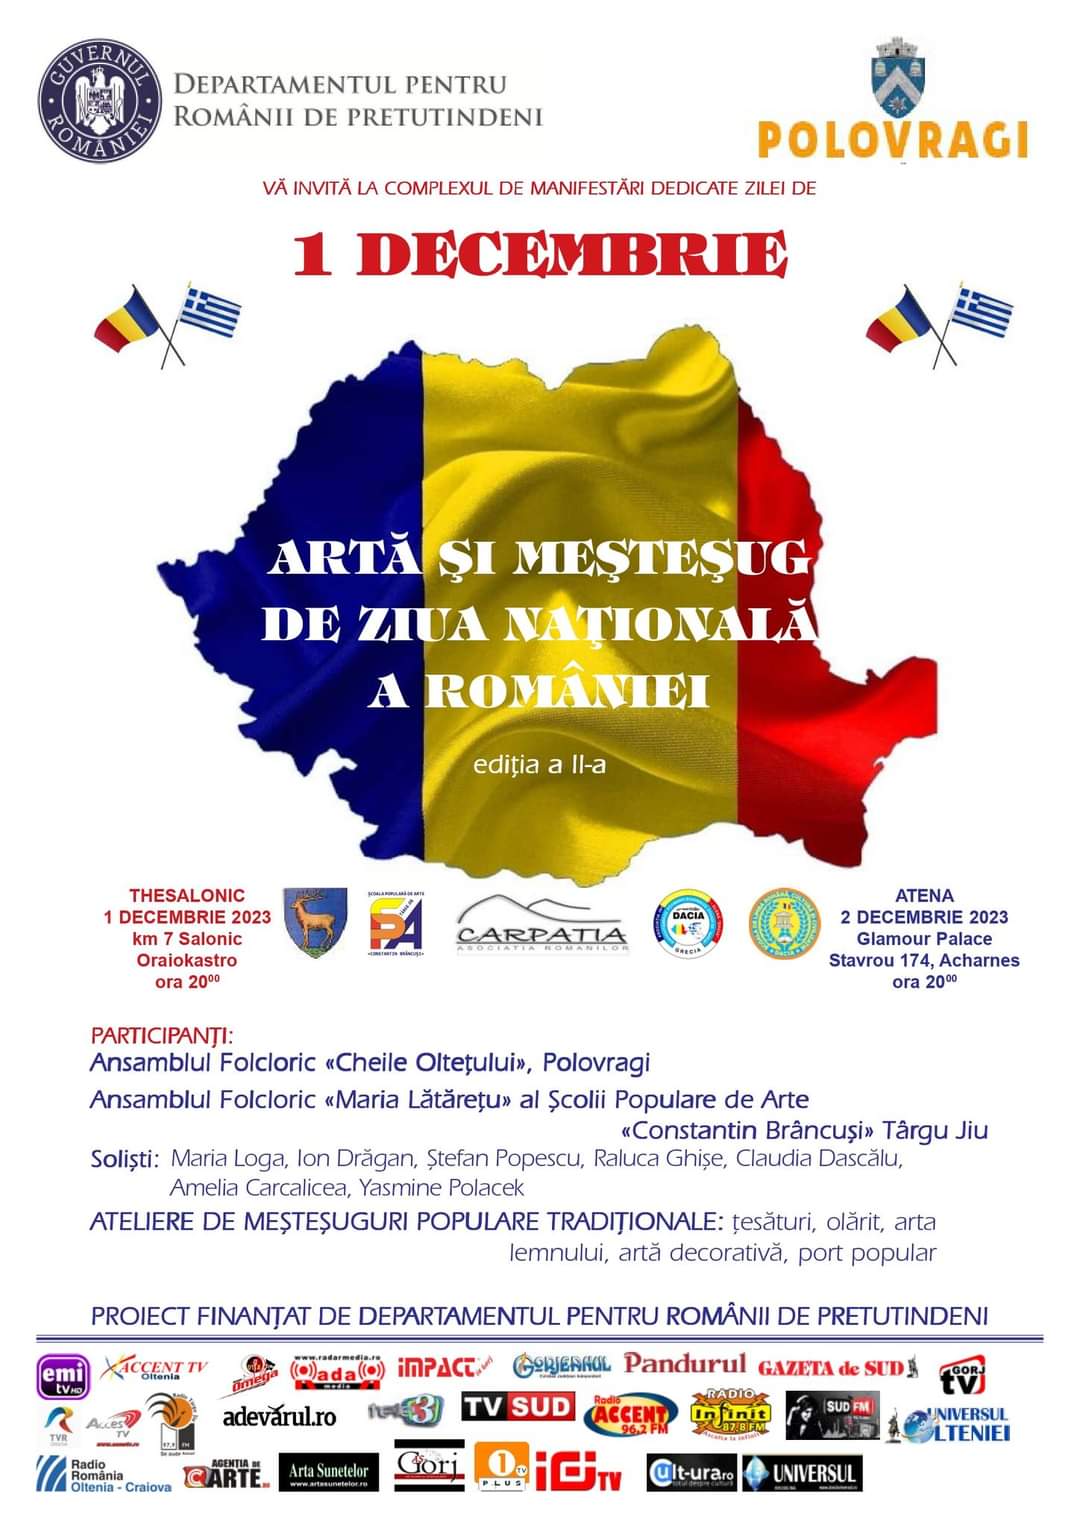 ”Artă și Meșteșug de Ziua Națională a României”, ediția a II-a